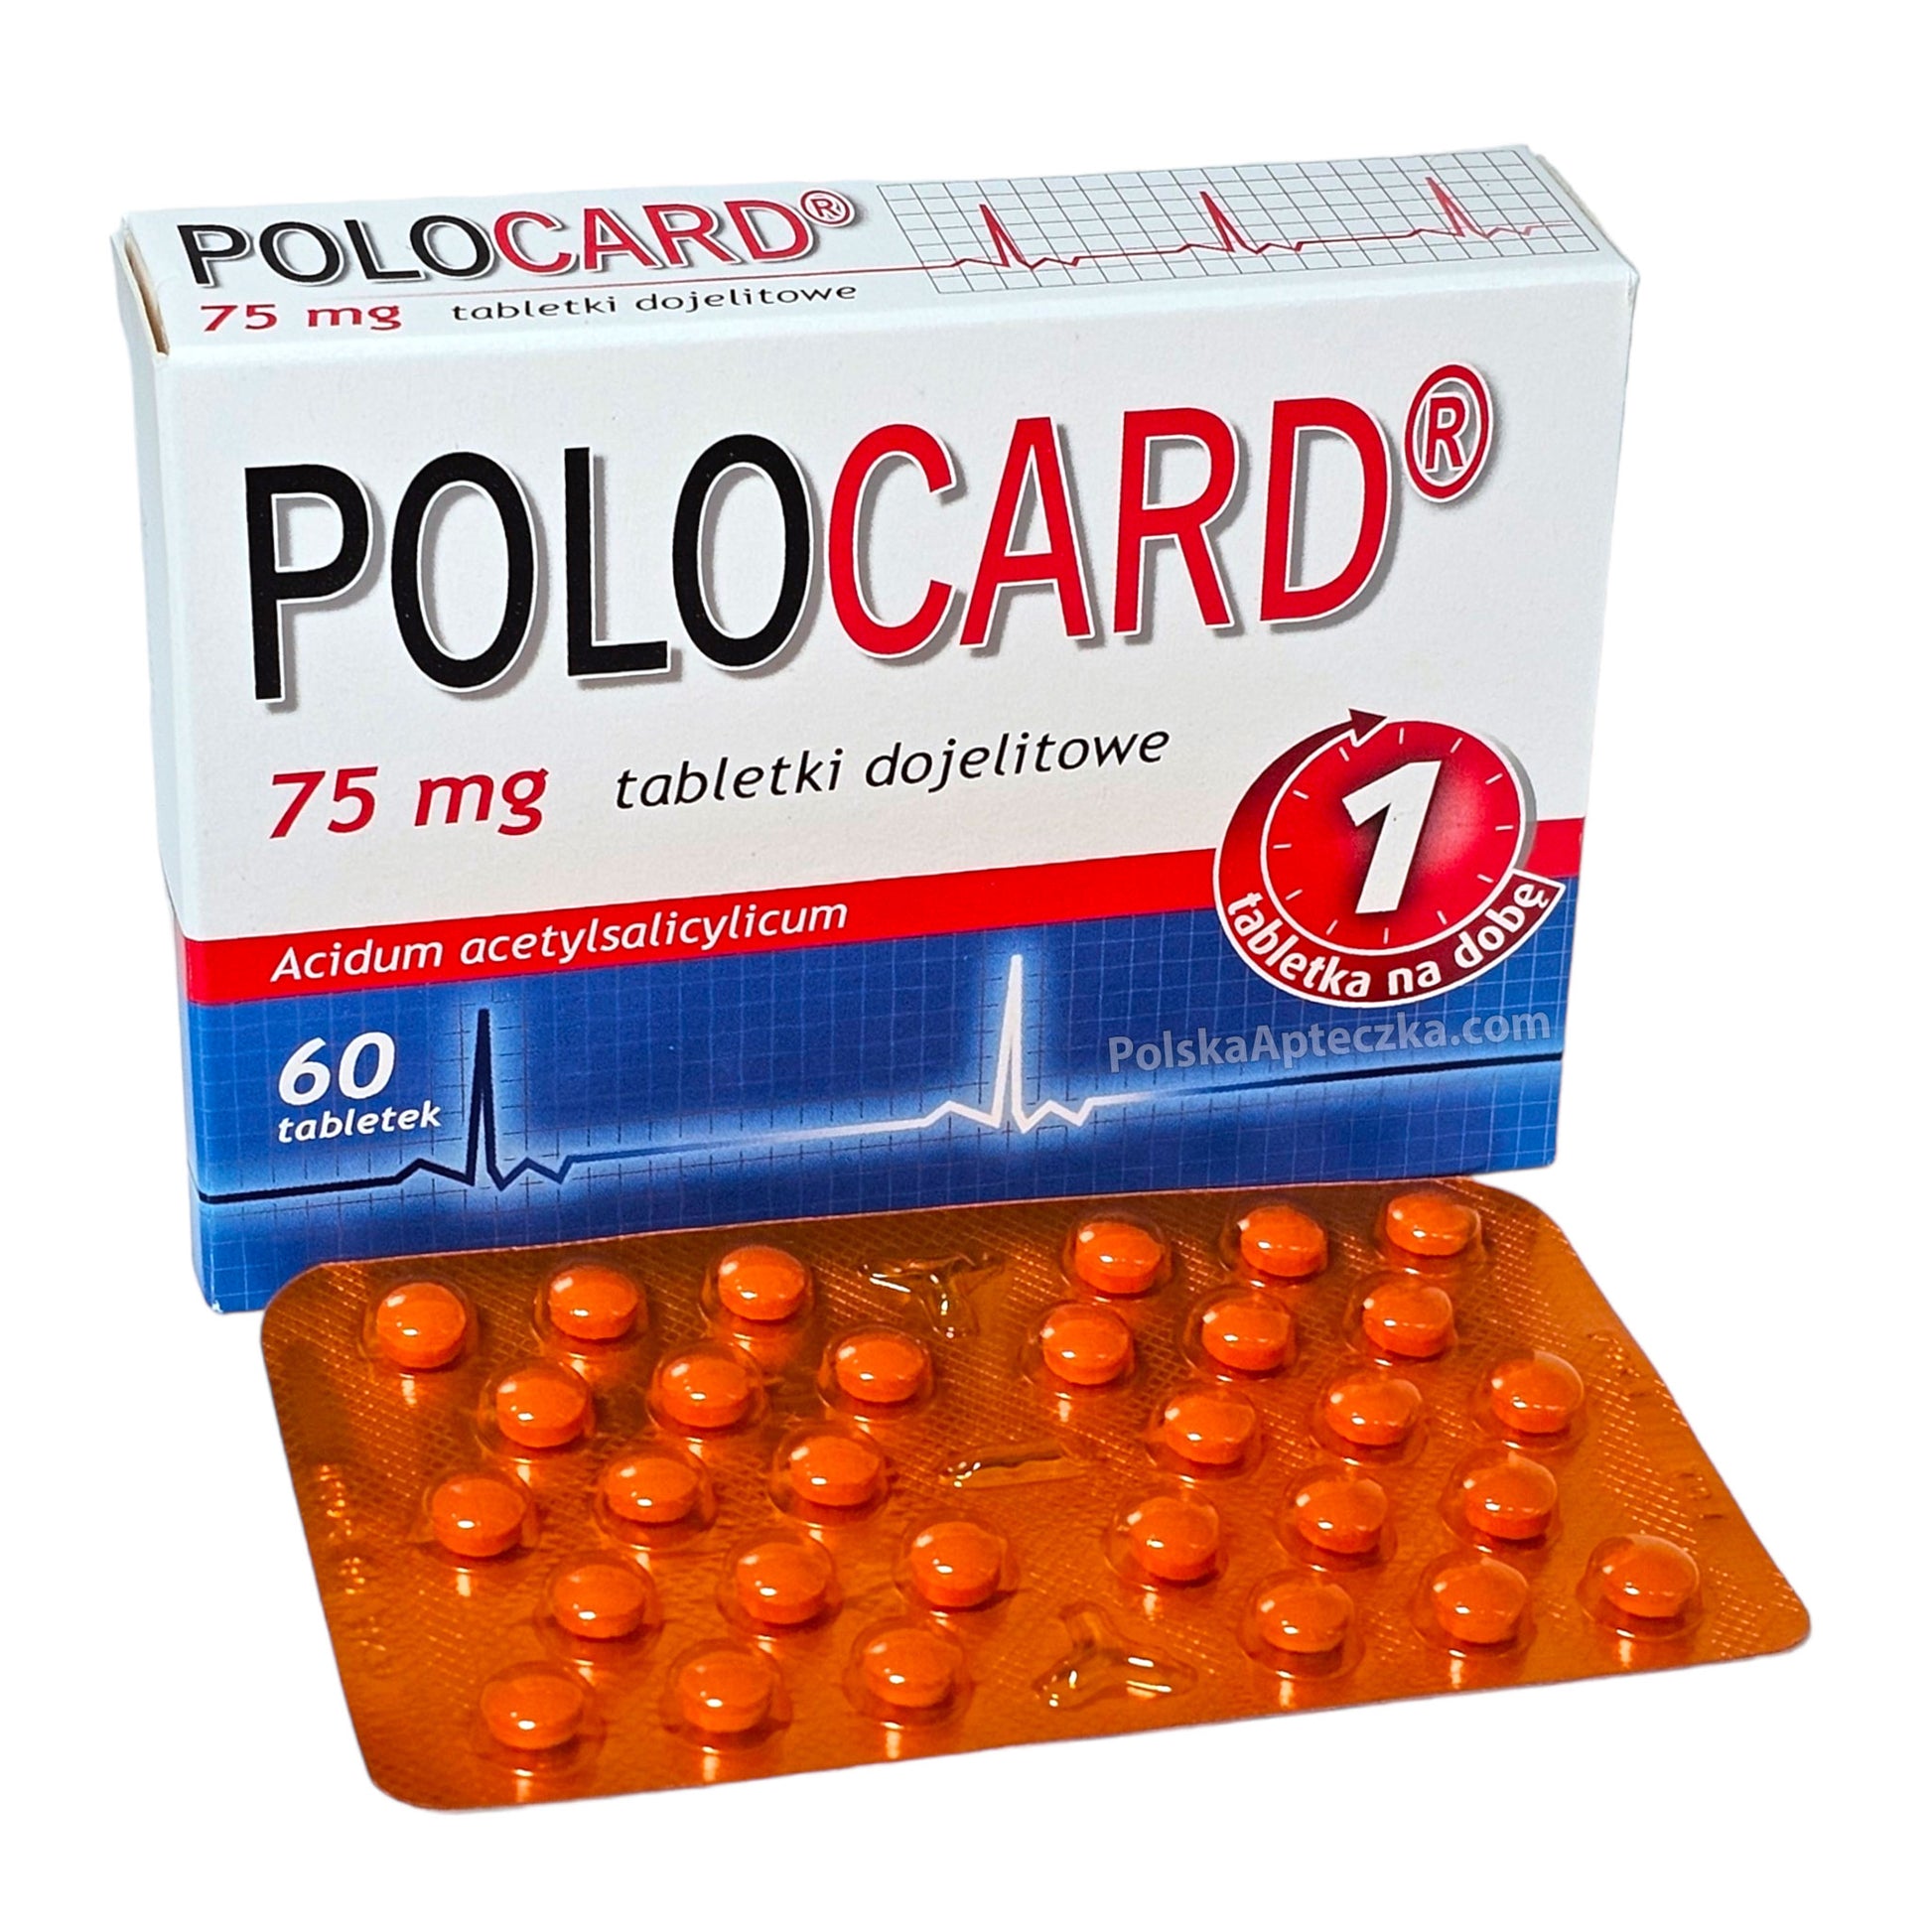 polocard tablets